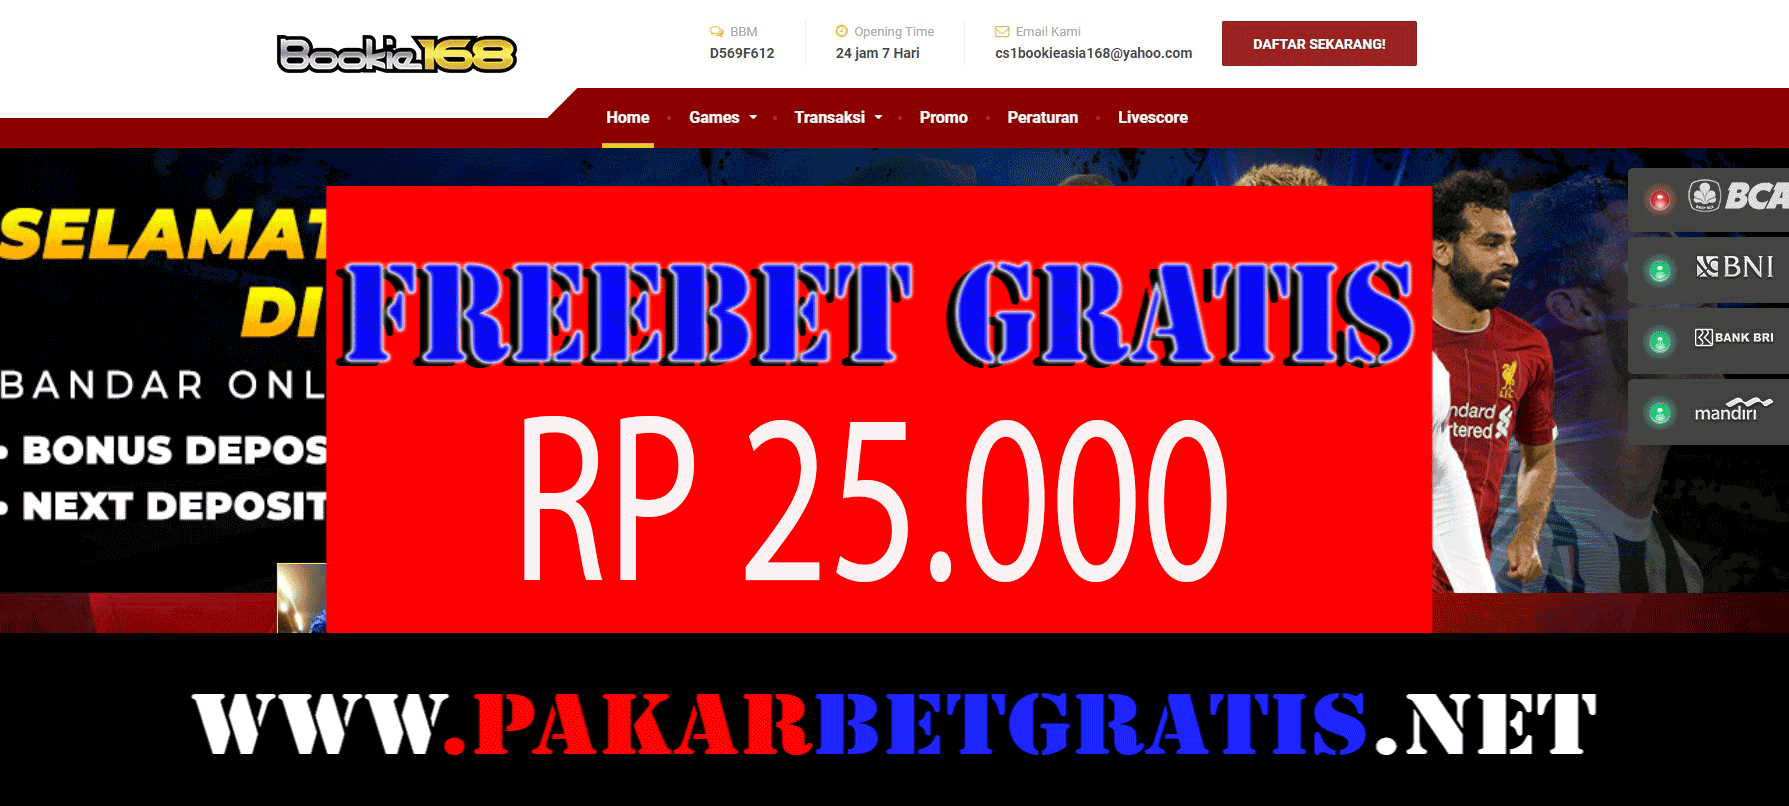 Freebet Gratis Bookie168 Rp 25.000 tanpa deposit